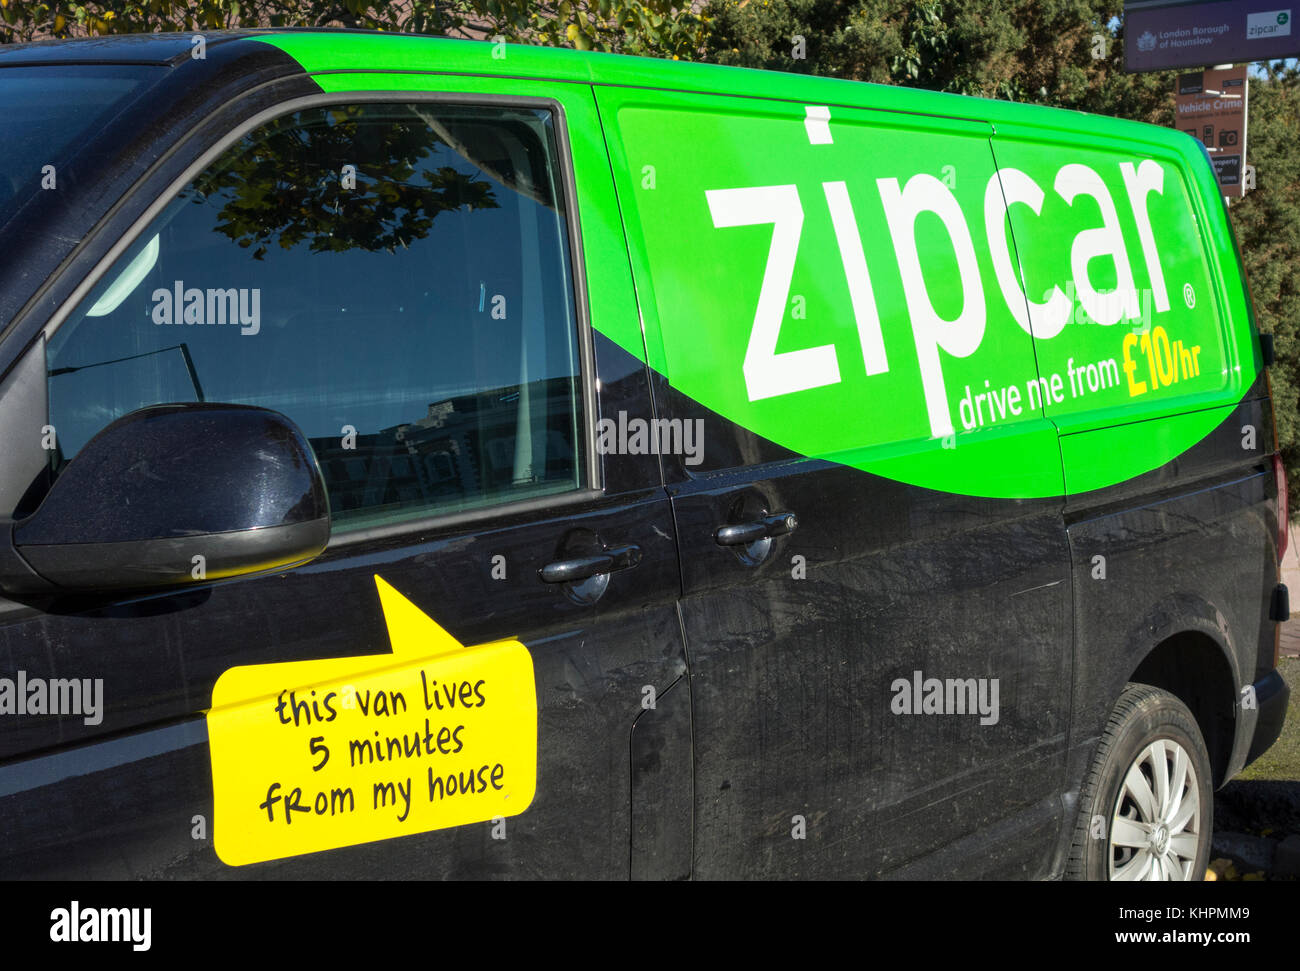 zipcar van rental